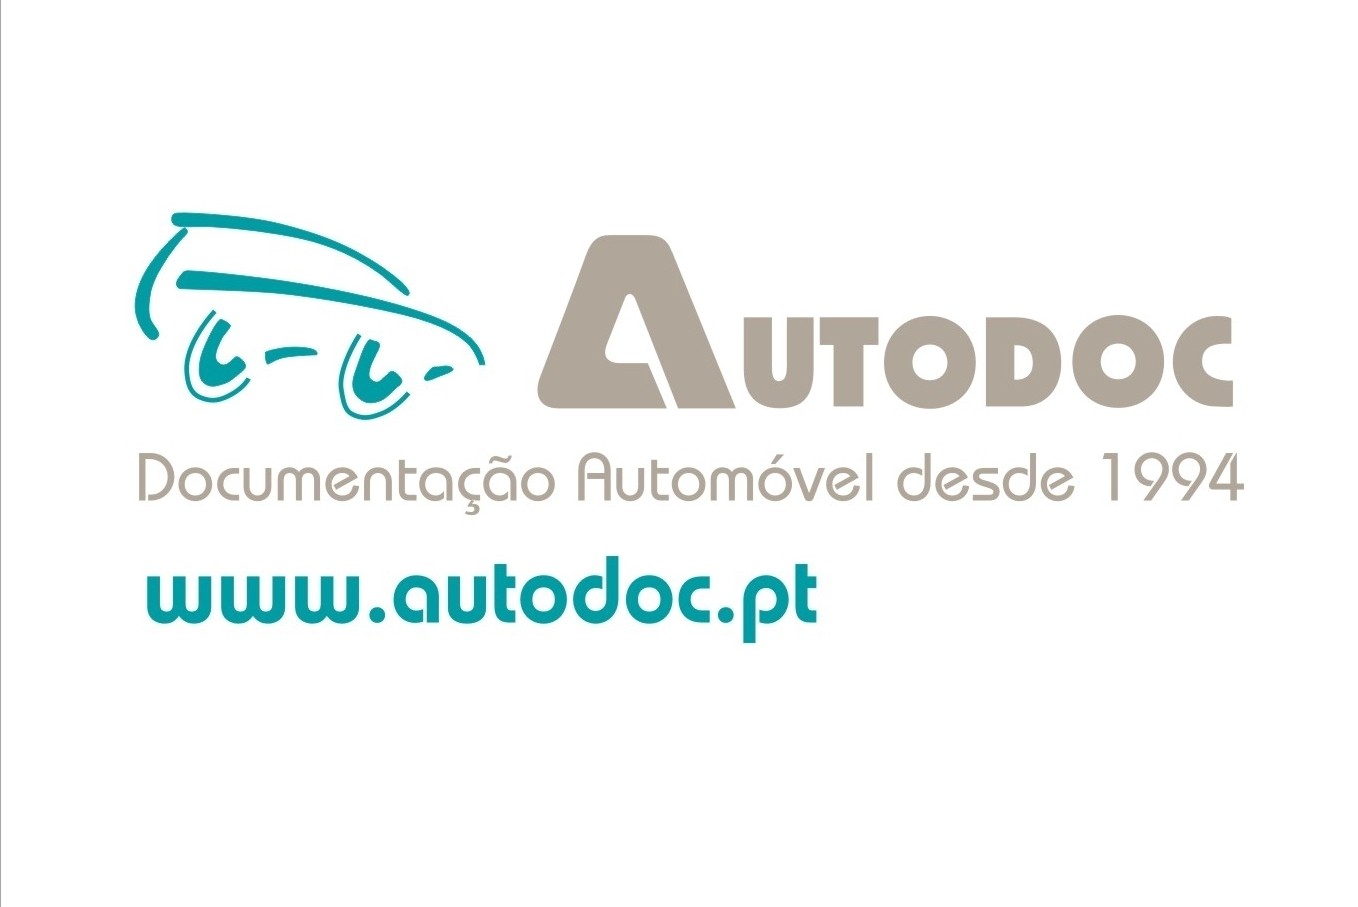 Apresentação novo site www.autodoc.pt